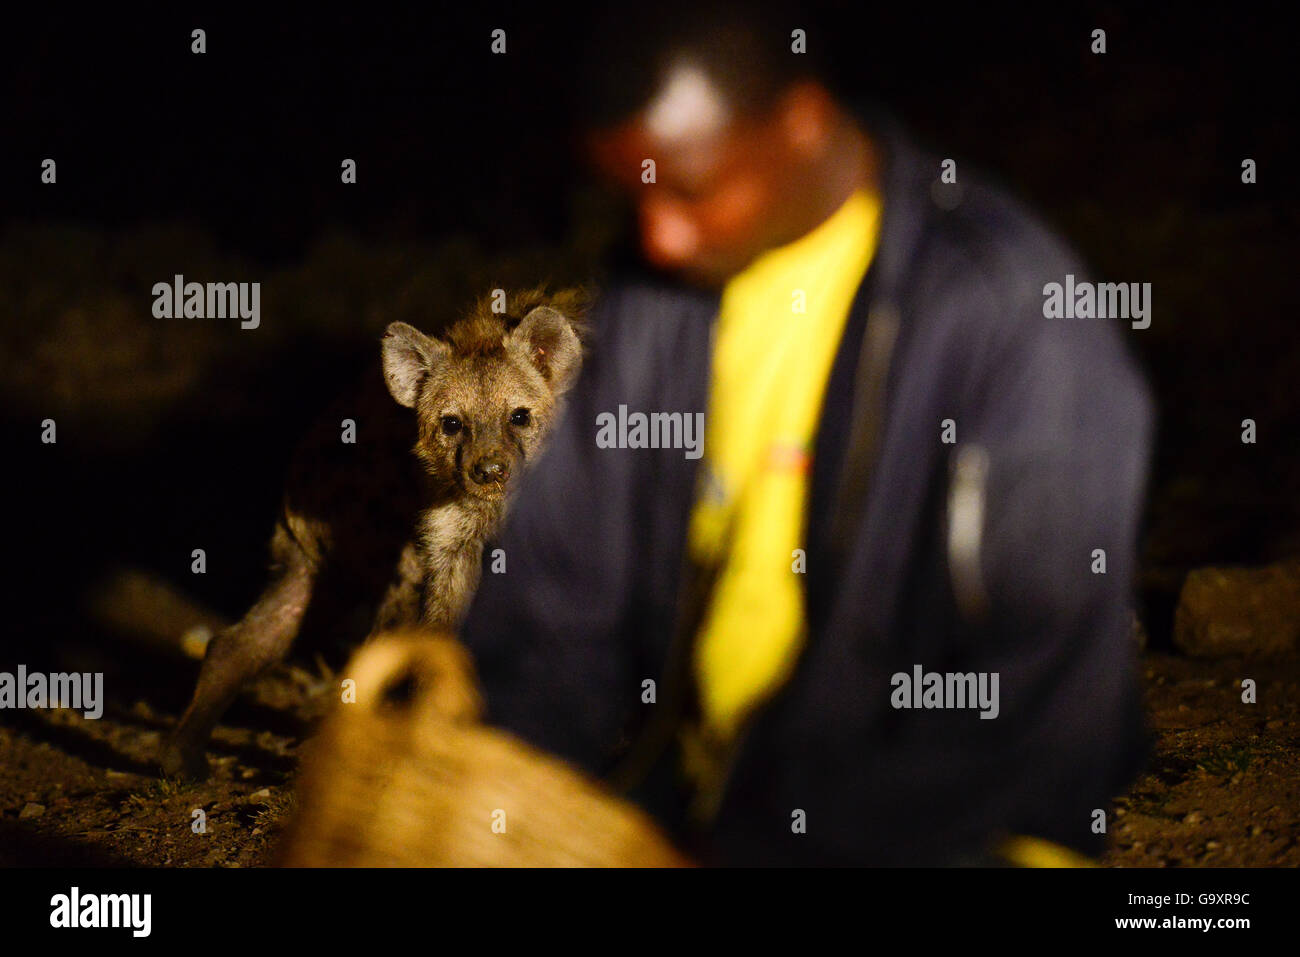 L'alimentation de l'homme des hyènes (Crocuta crocuta) dans la nuit dans la ville de Harar, cela a été une tradition pour plusieurs siècles, et est maintenant devenu un spectacle pour les touristes. L'Éthiopie, Novembre 2014 Banque D'Images